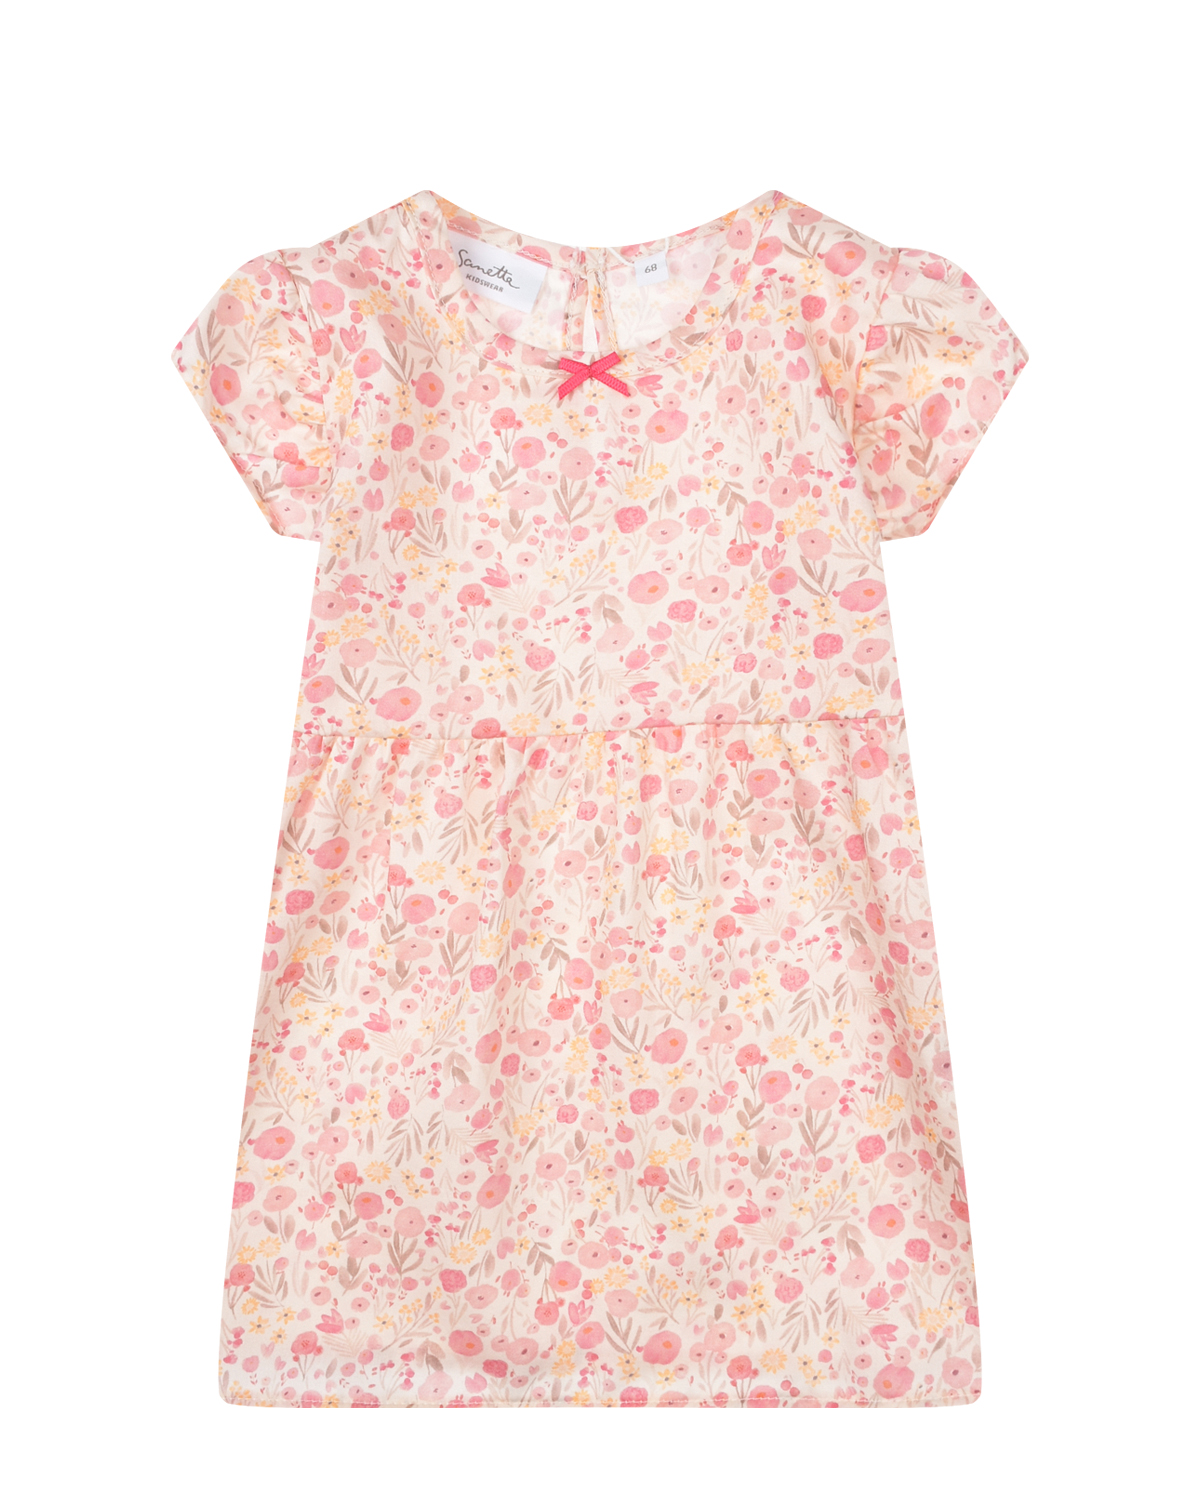 Розовое платье с цветочным принтом Sanetta Kidswear розовое многослойное платье gulliver 152